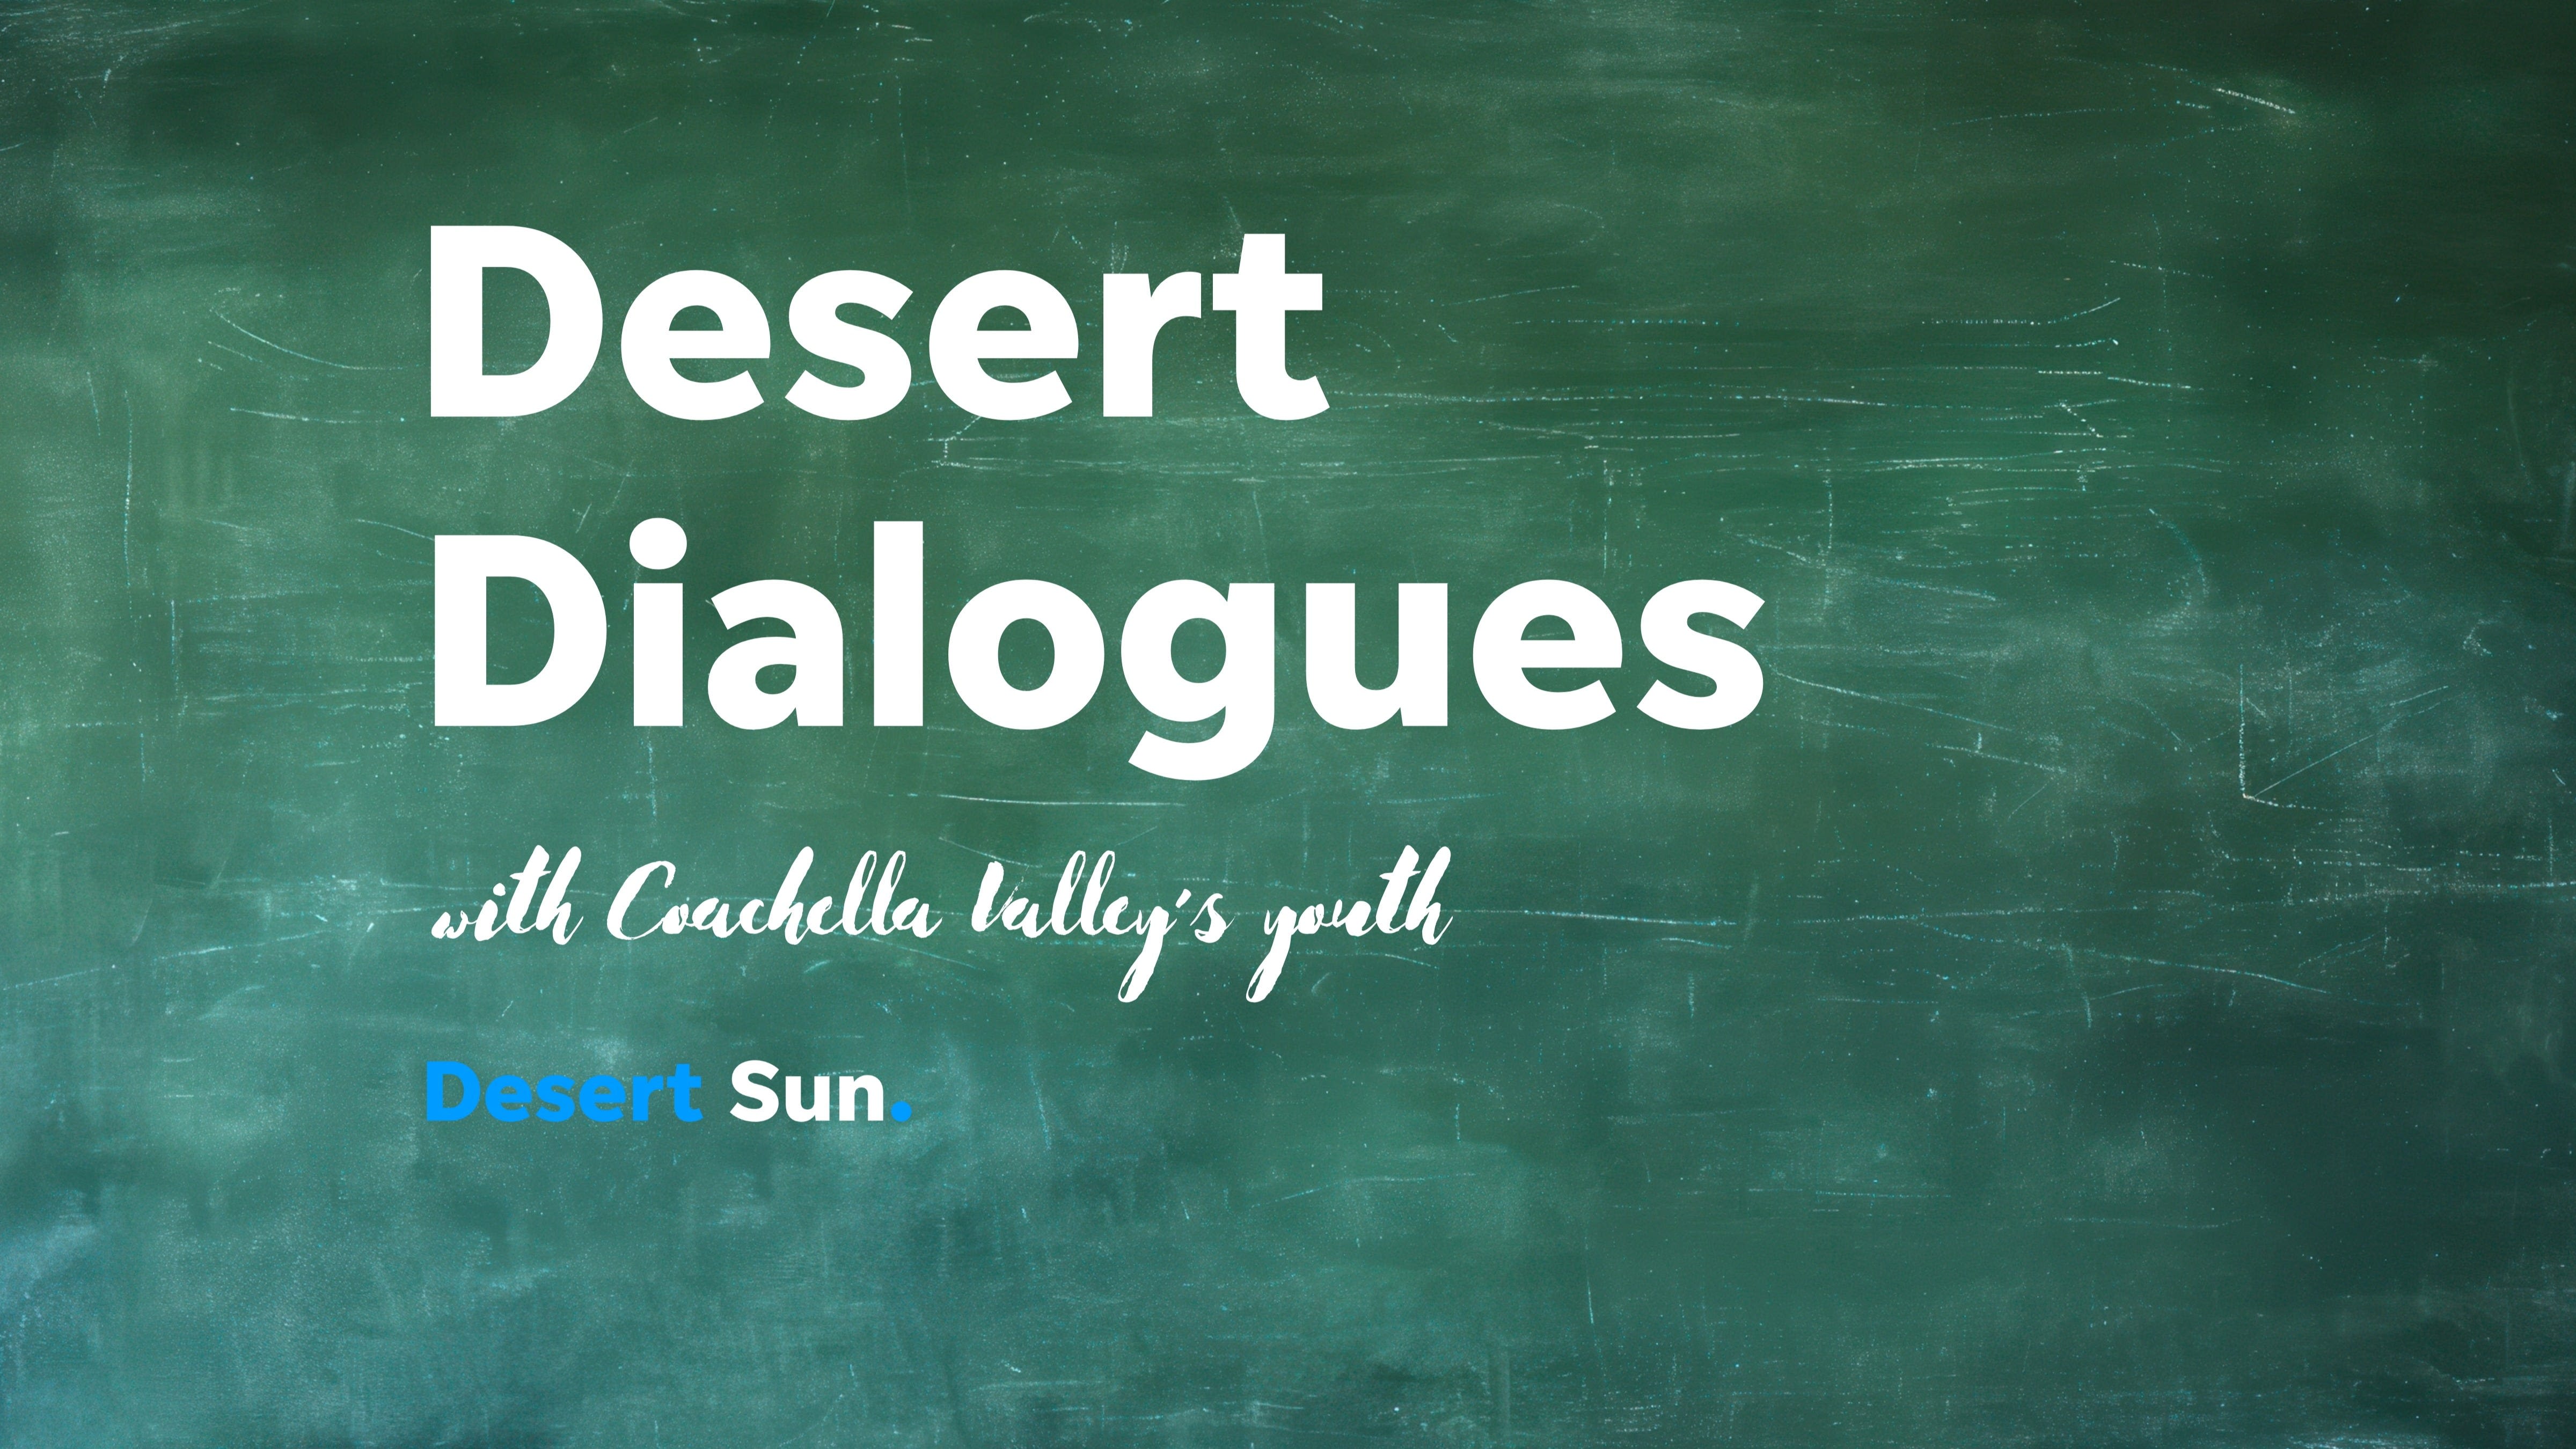 La Quinta High senior earns the final Desert Dialogue spotlight